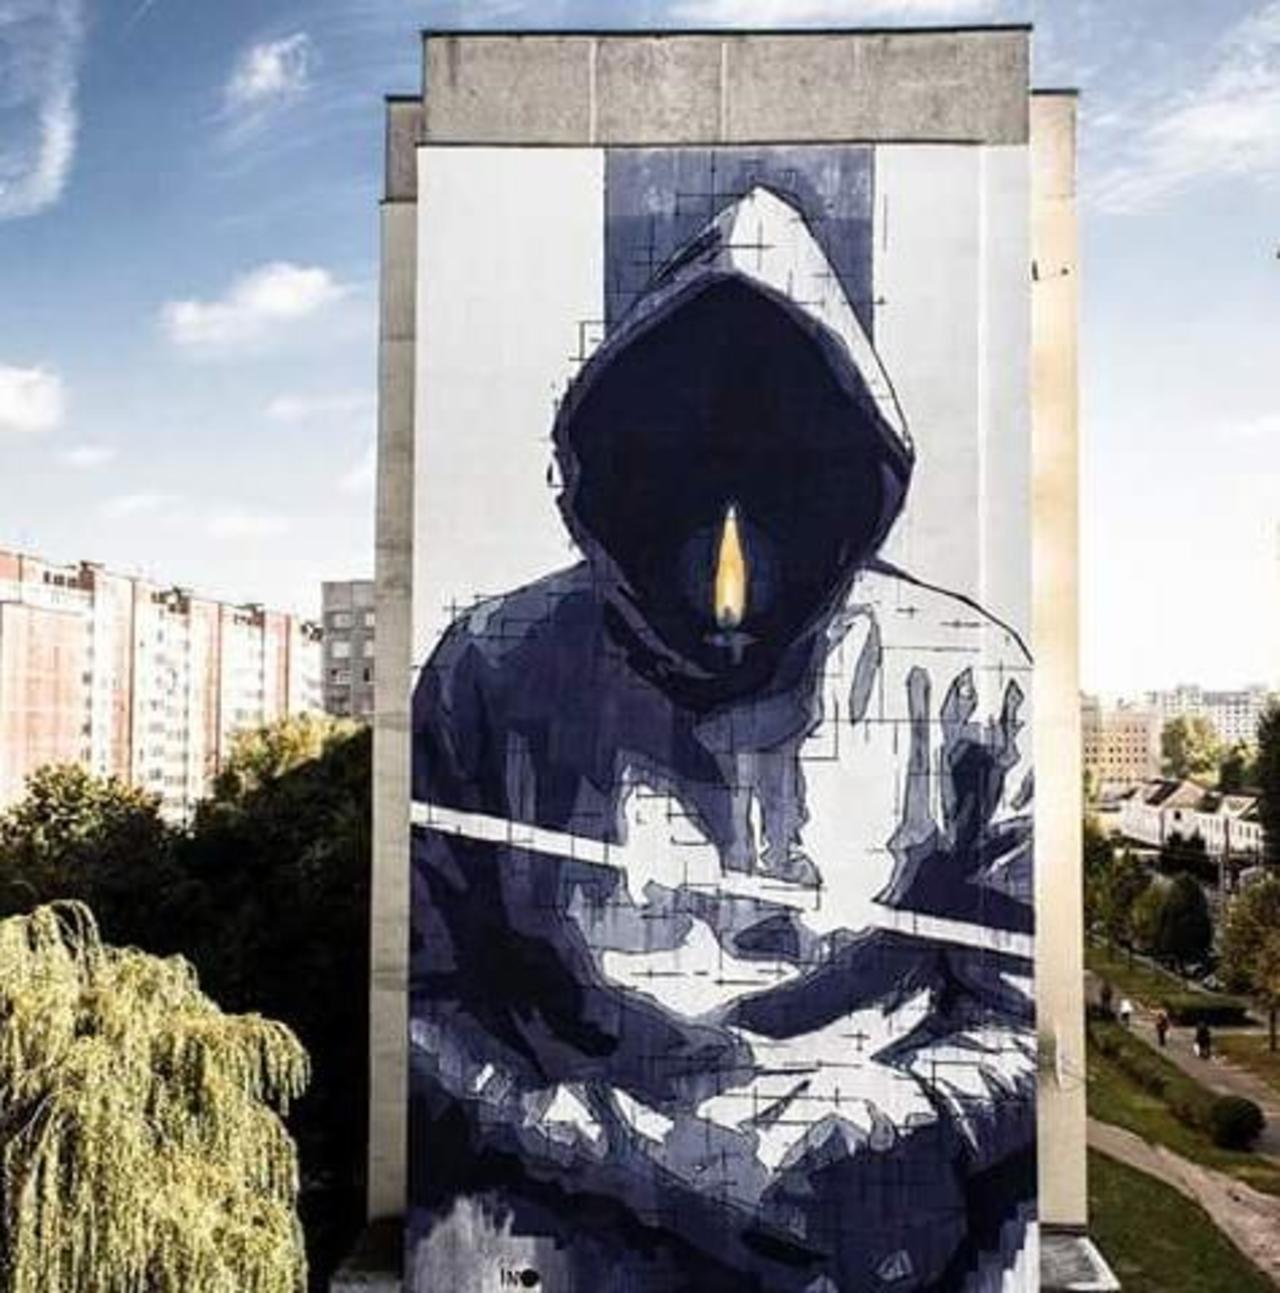 RT @hypatia373: #art #streetart #graffiti 
#INO https://t.co/uGDIi6J1jb